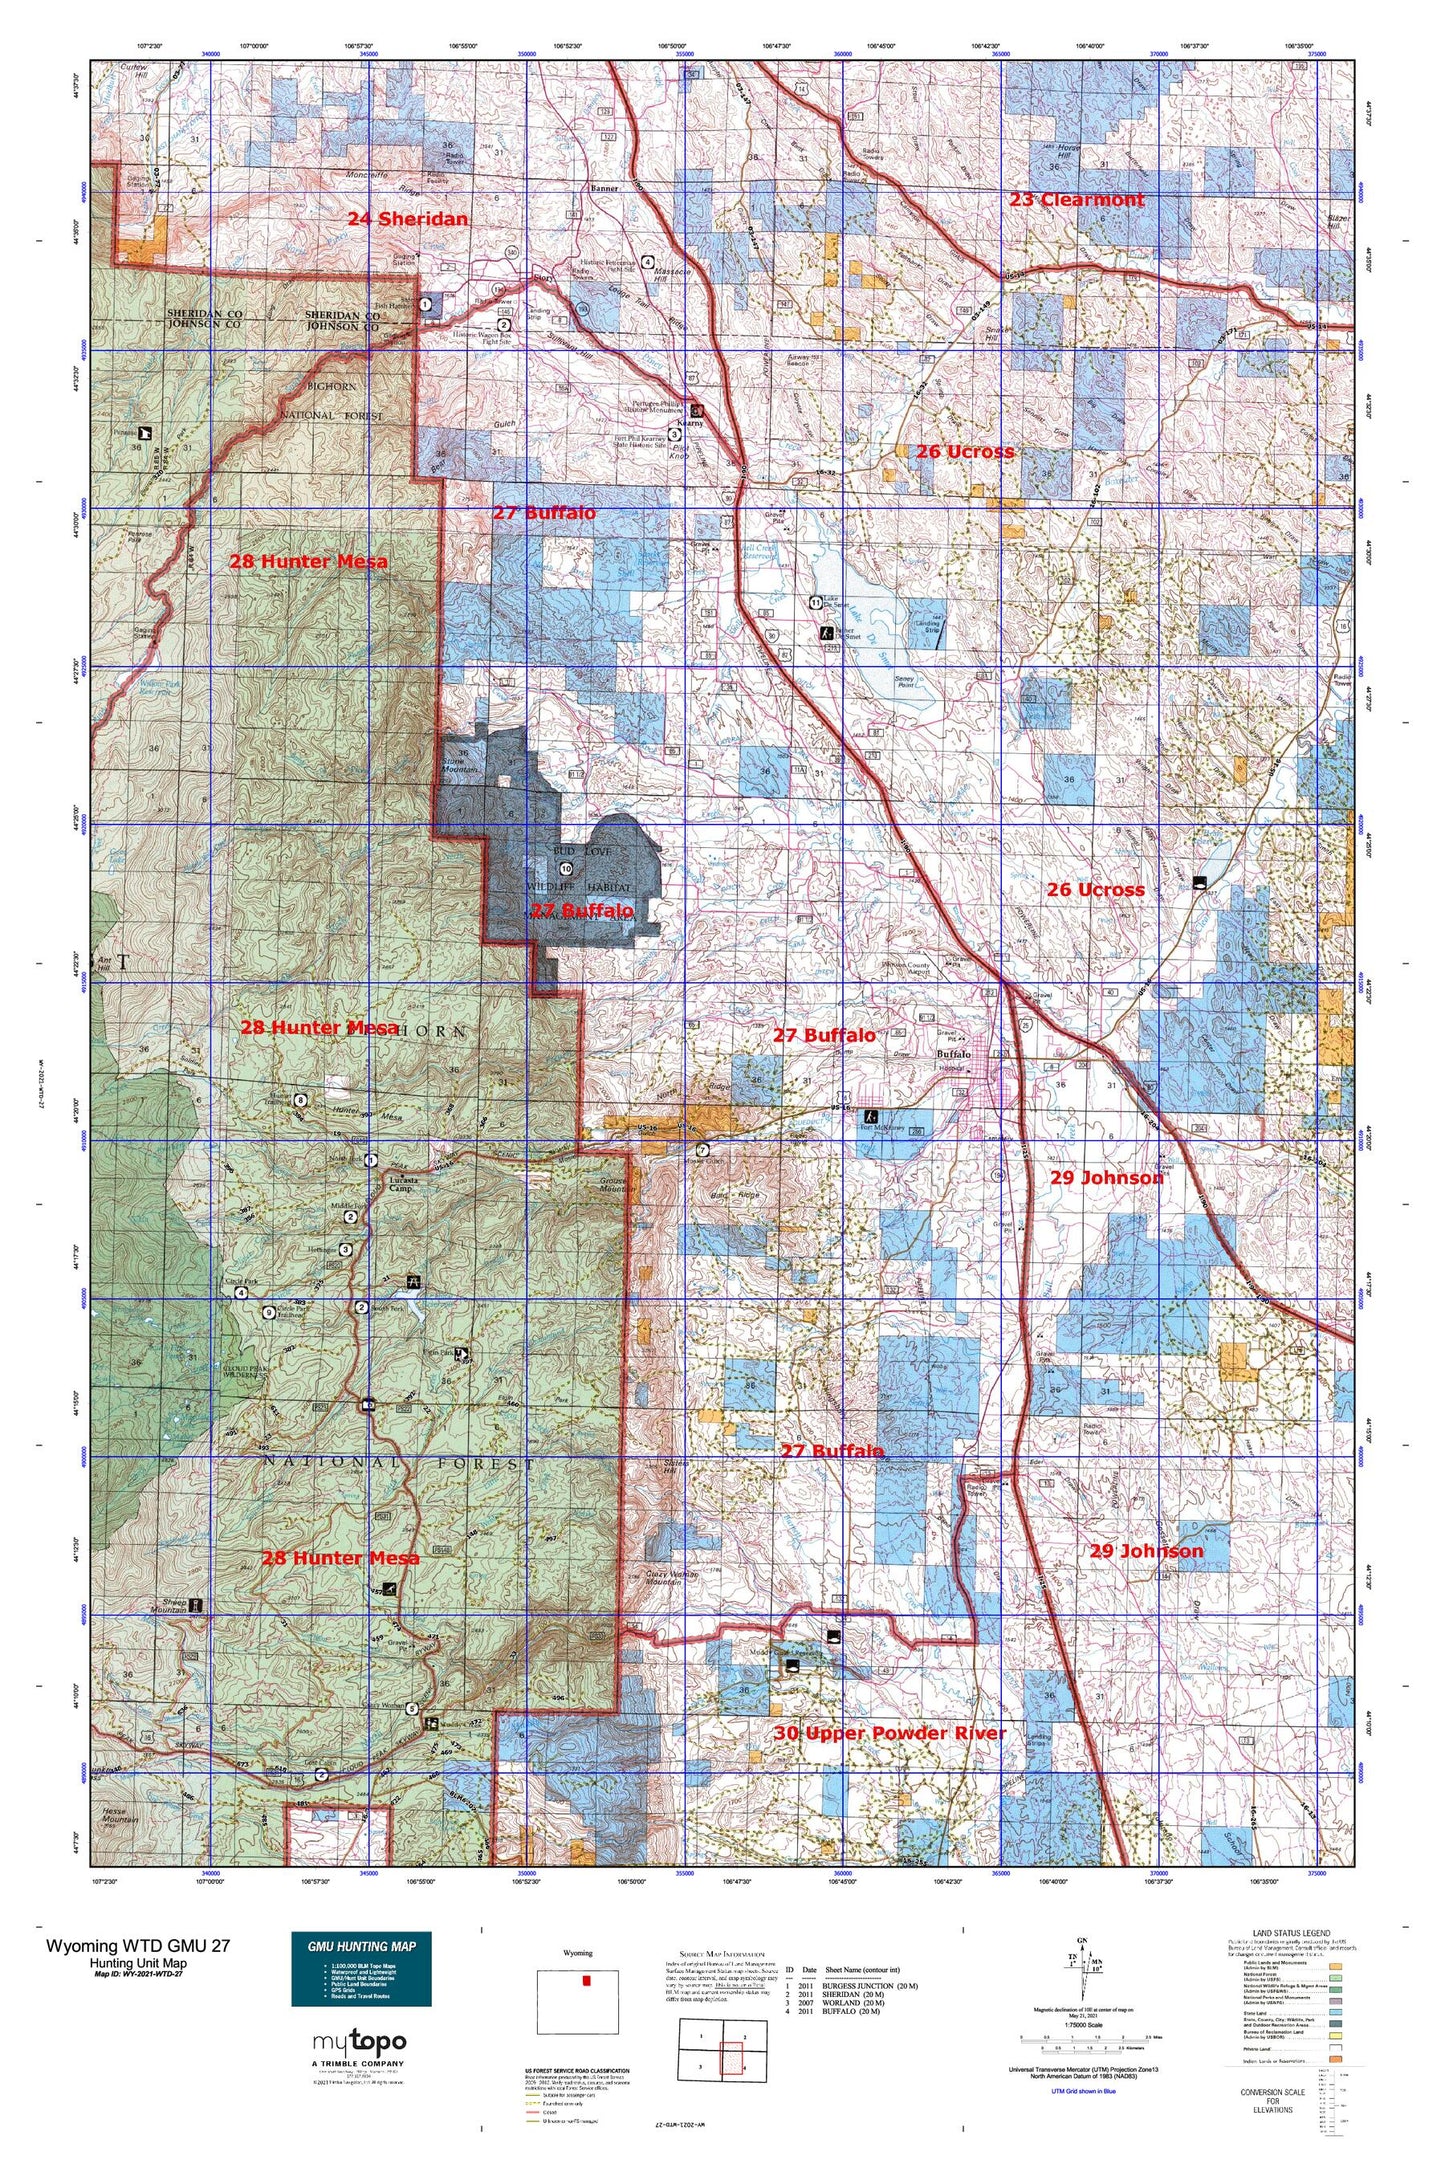 Wyoming Whitetail Deer GMU 27 Map Image